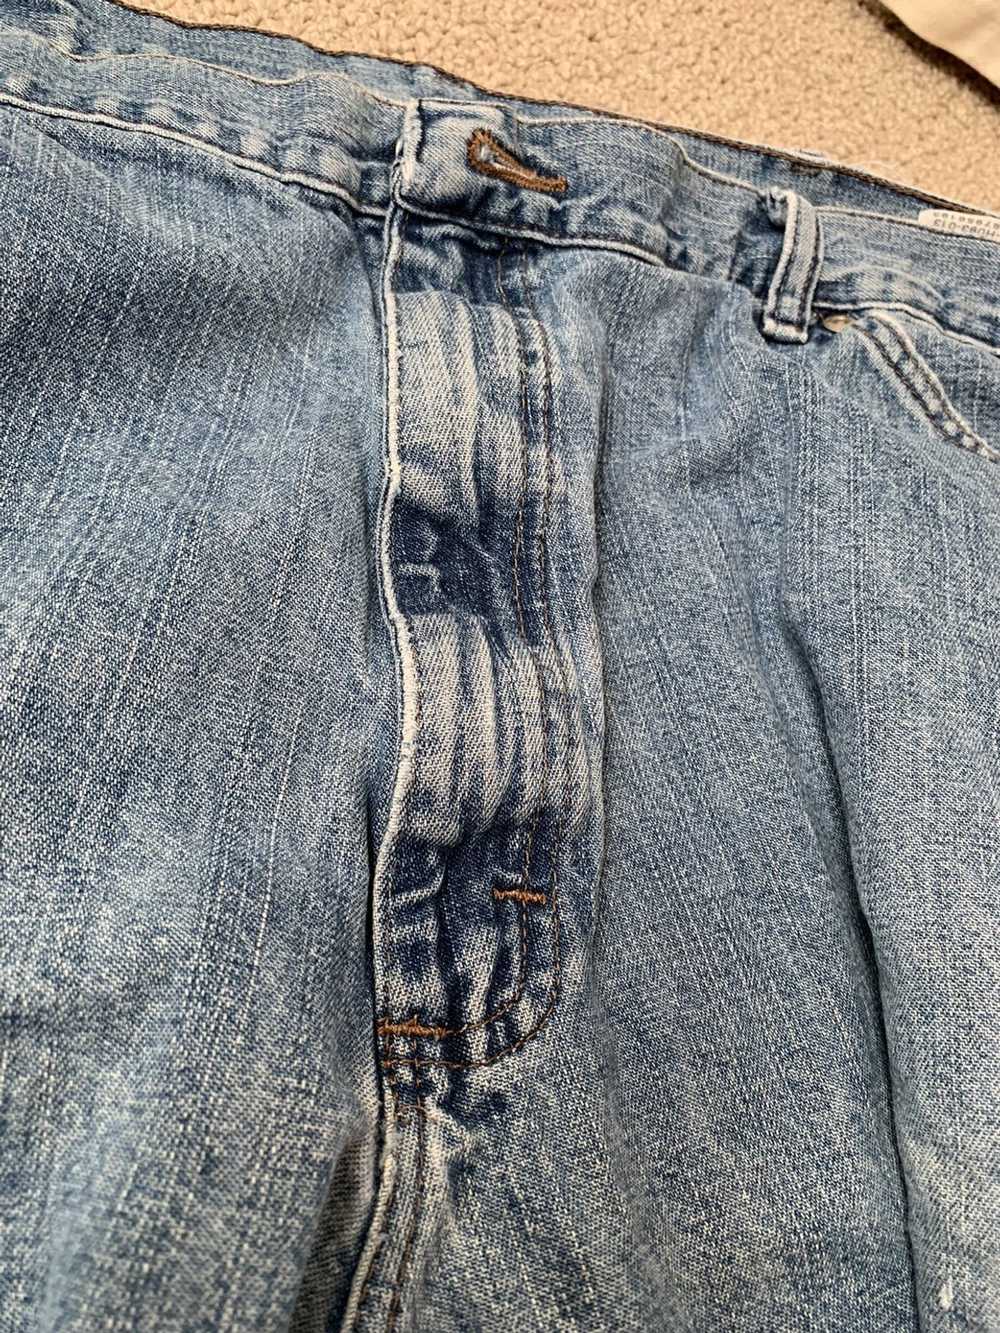 Vintage × Wrangler Vintage Wrangler Worn Jeans - image 6